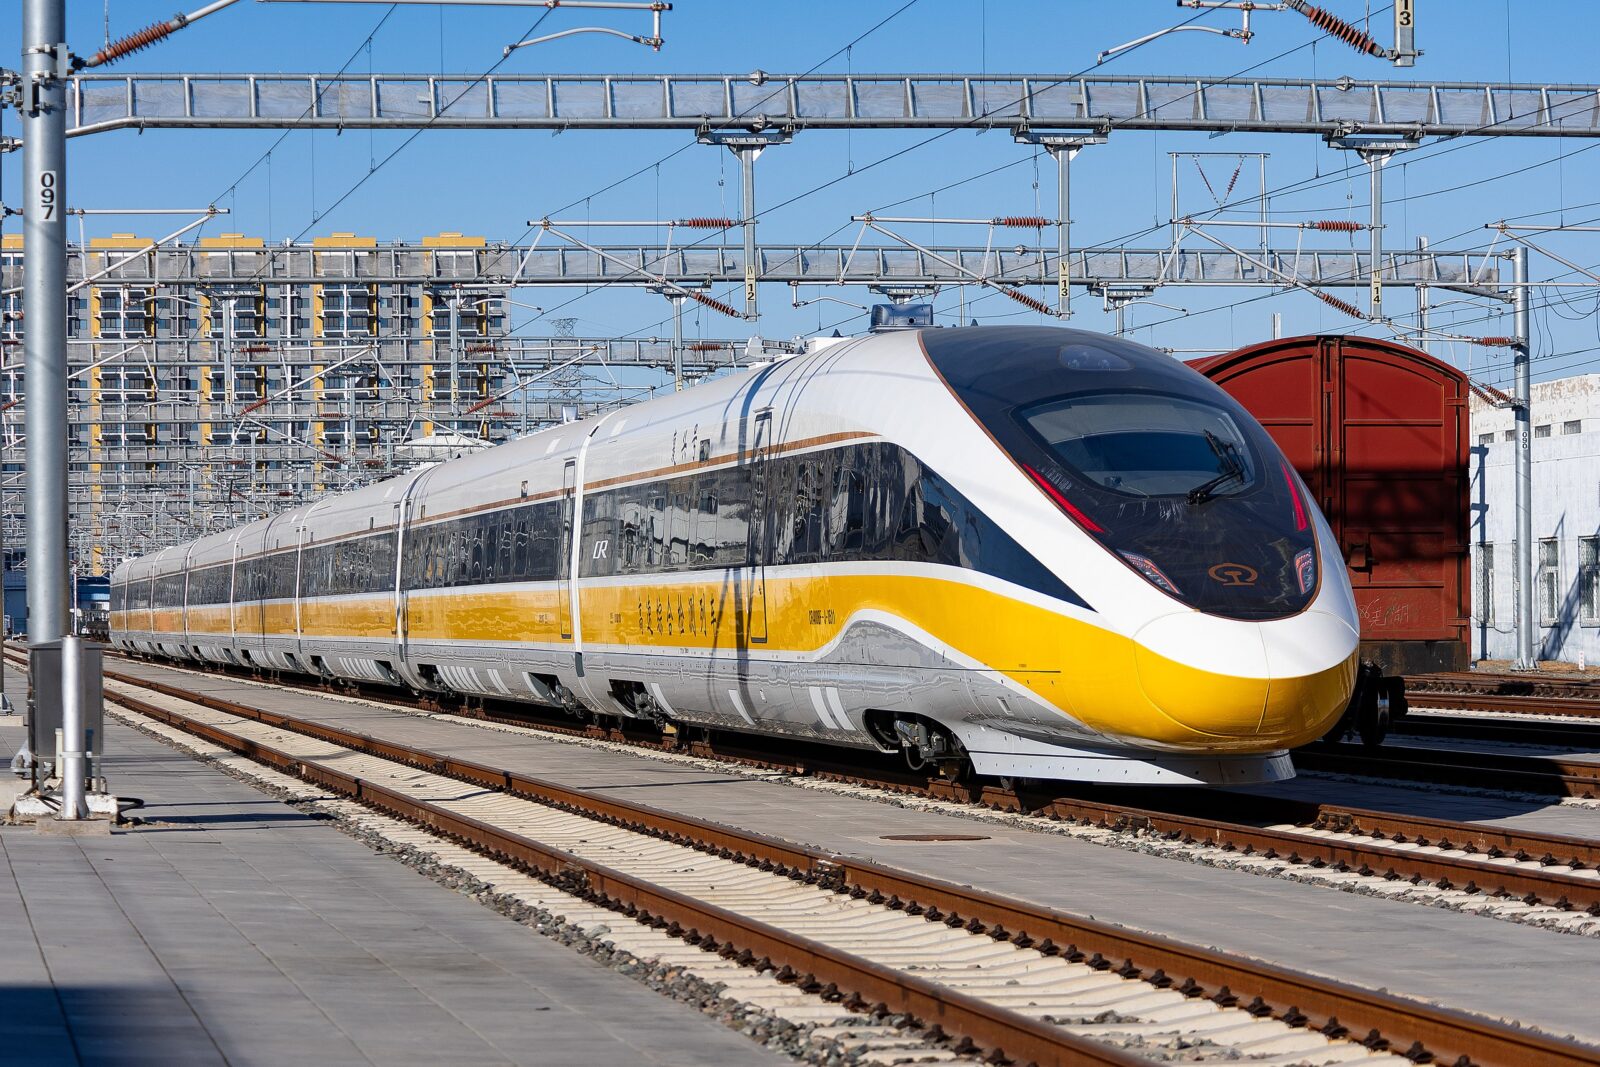 Испытательный поезд CR400BF-J, на котором тестируются технологии для будущего высокоскоростного поезда CR450